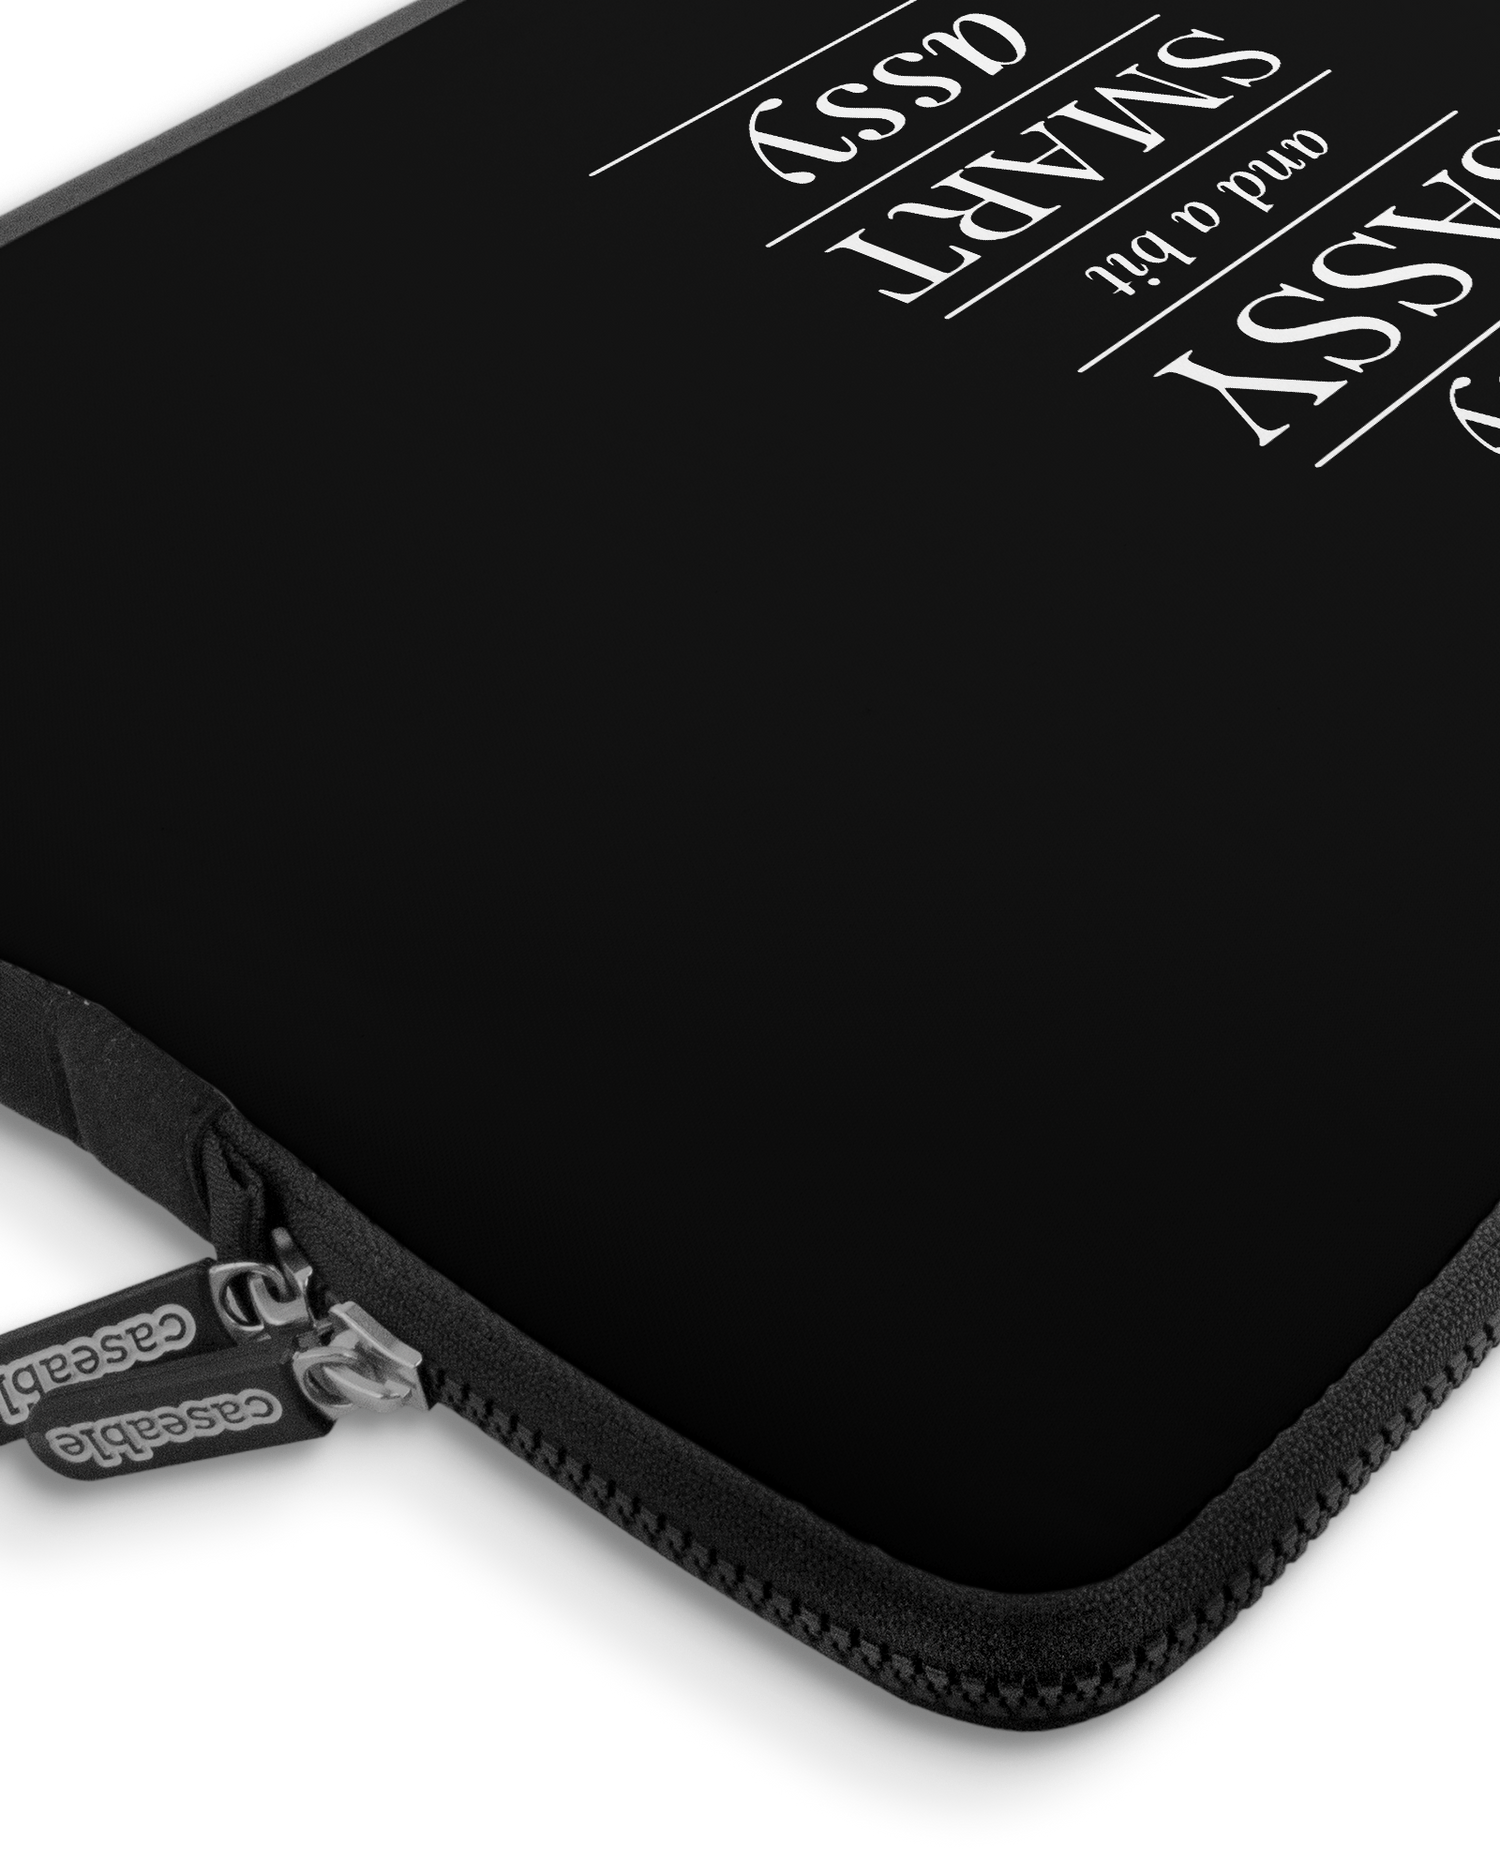 Classy Sassy Premium Laptoptasche 17 Zoll mit Gerät im Inneren